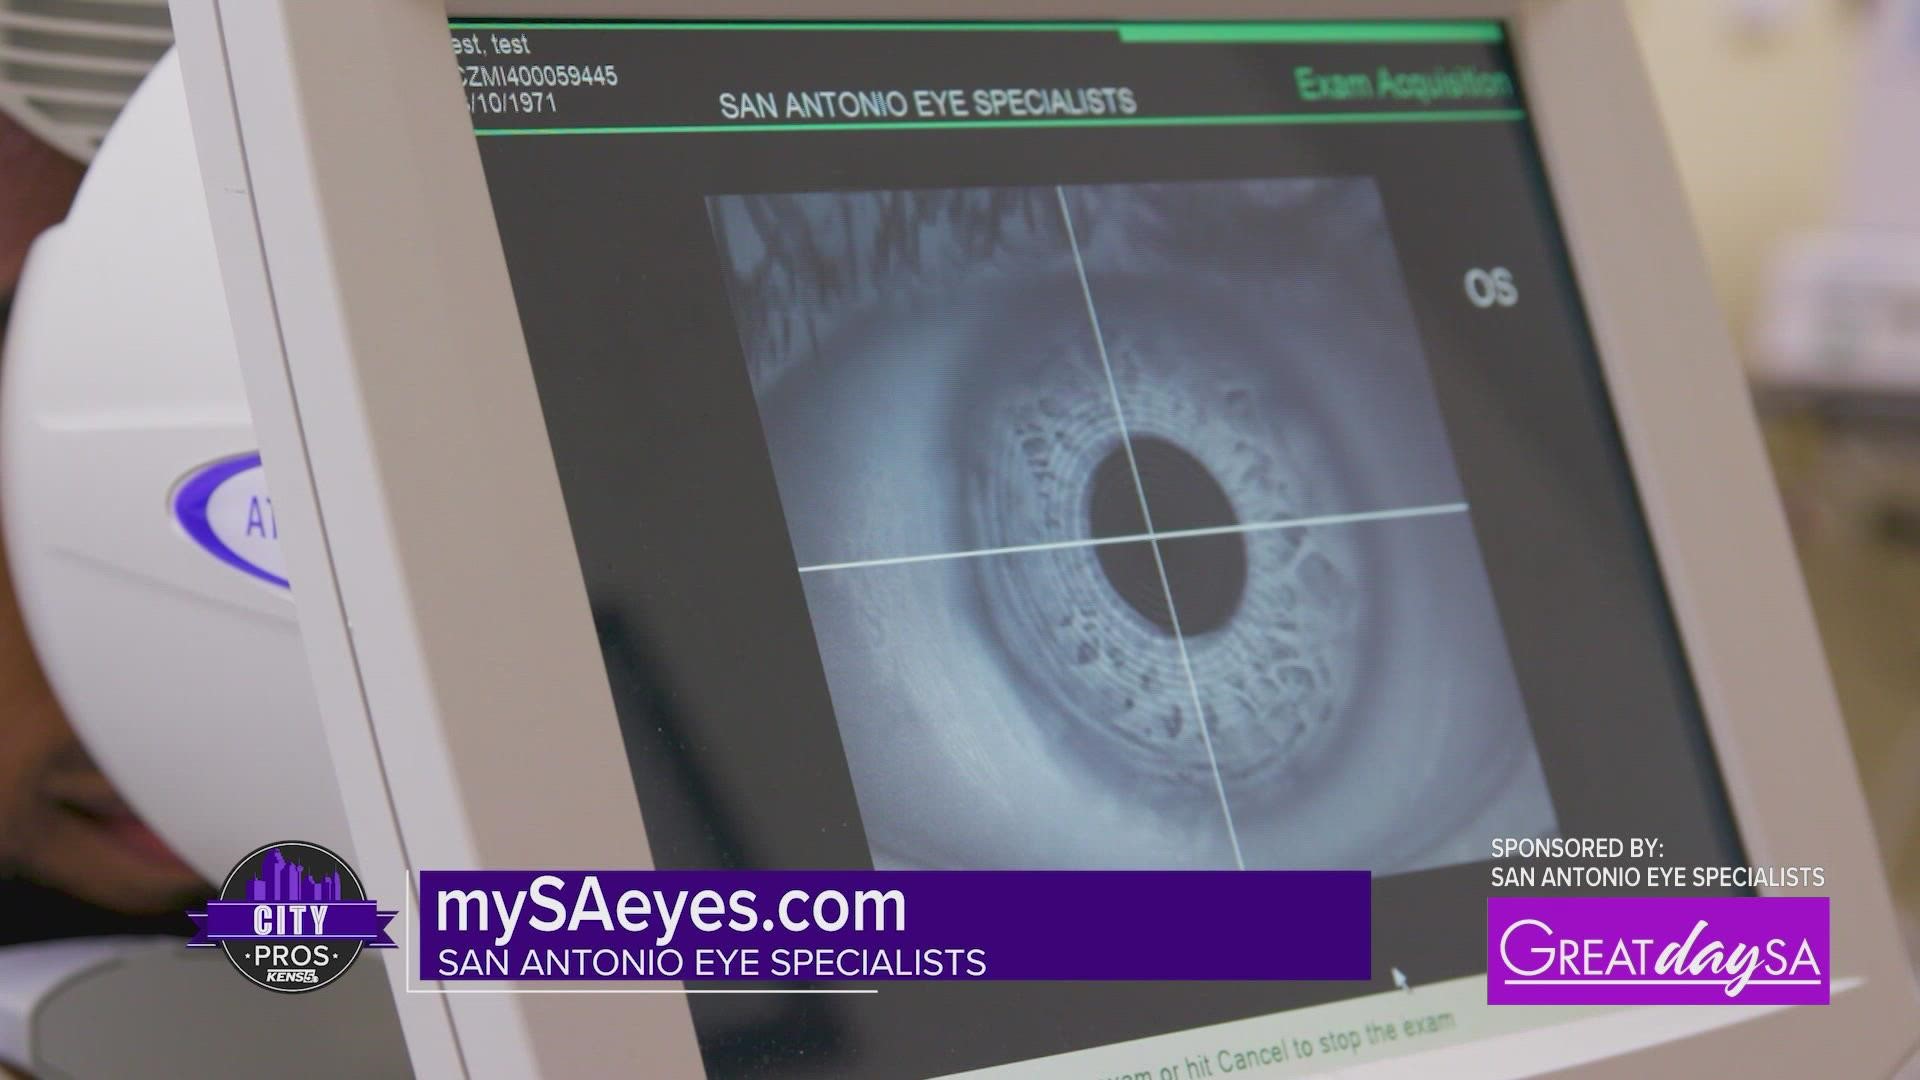 Sponsored by: San Antonio Eye Specialists